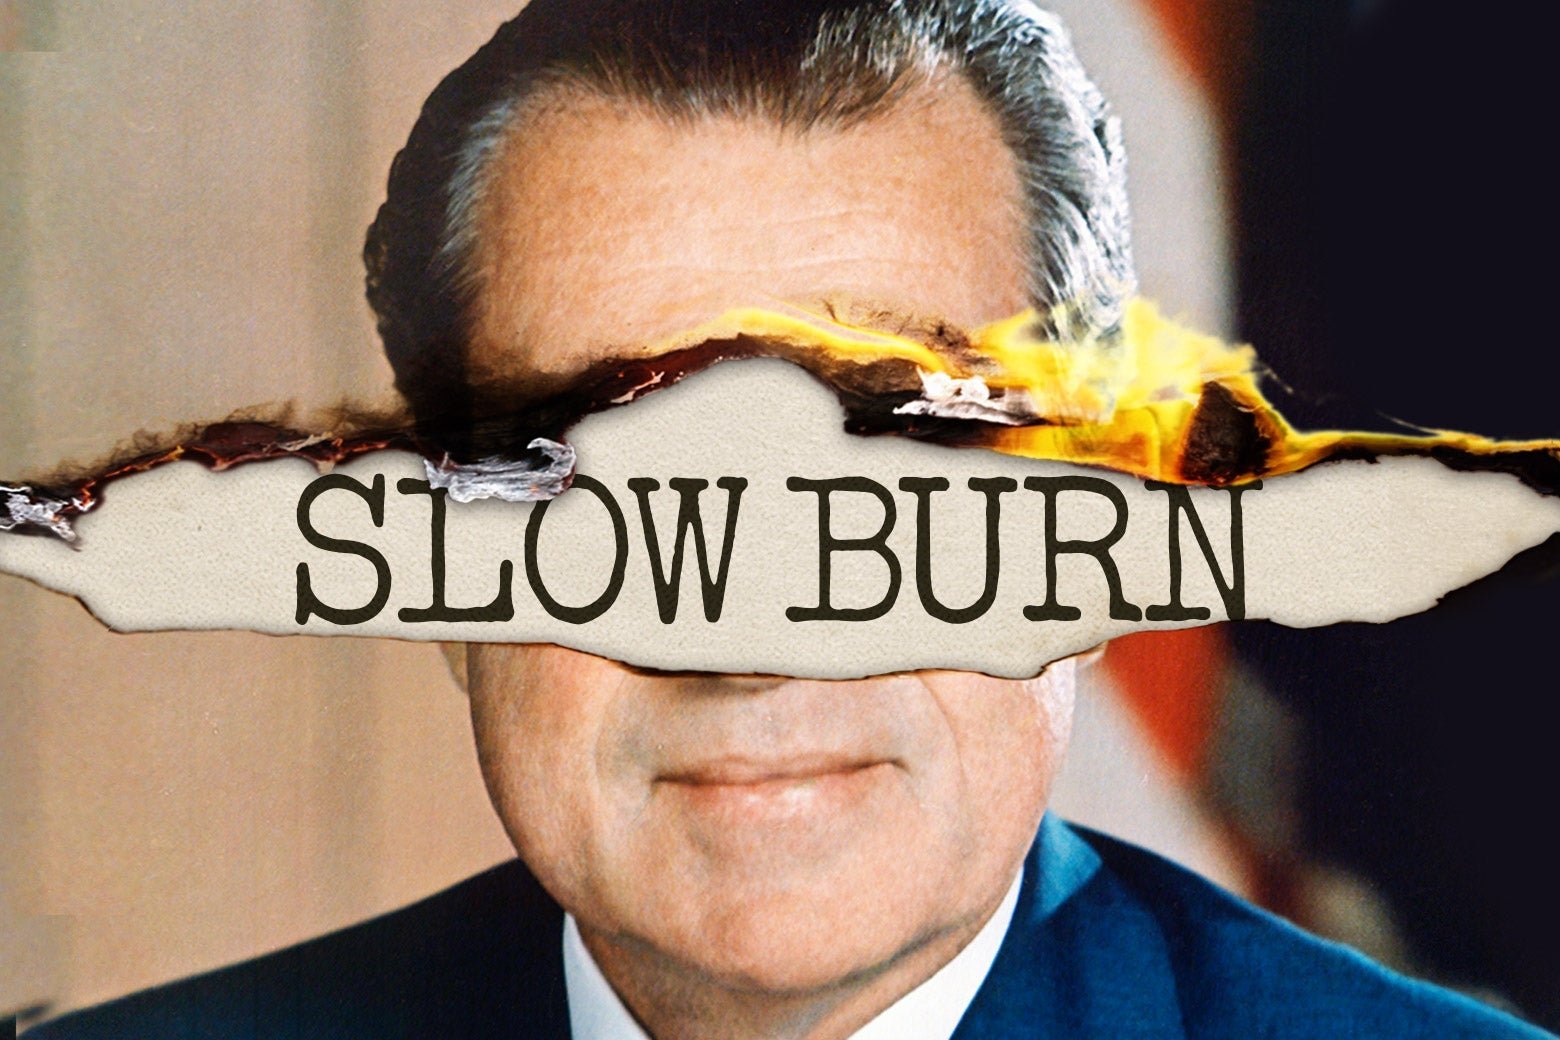 Slow Burn